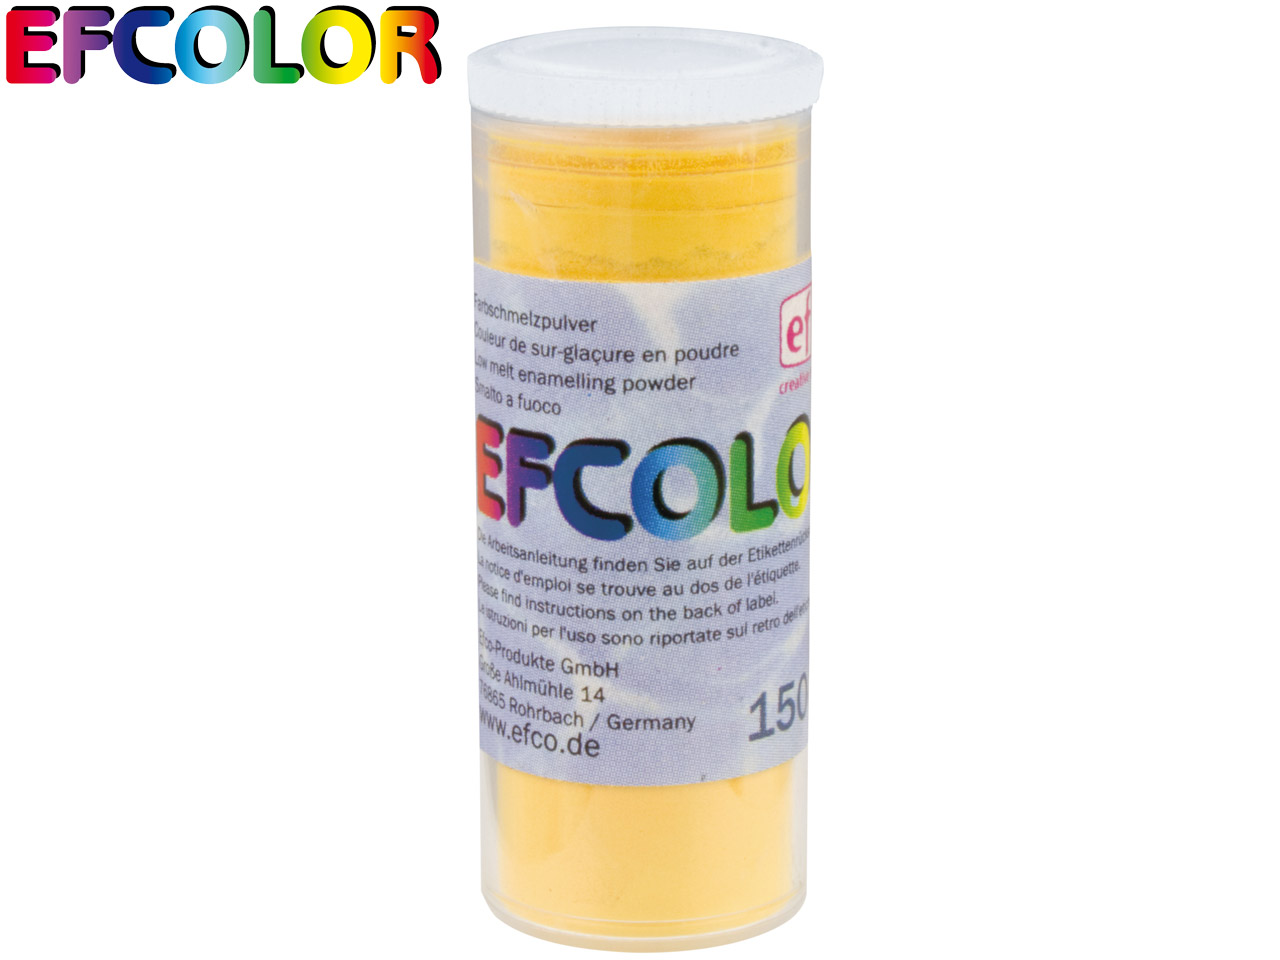 Efcolor Enamel Gold 10ml - Standard Image - 2